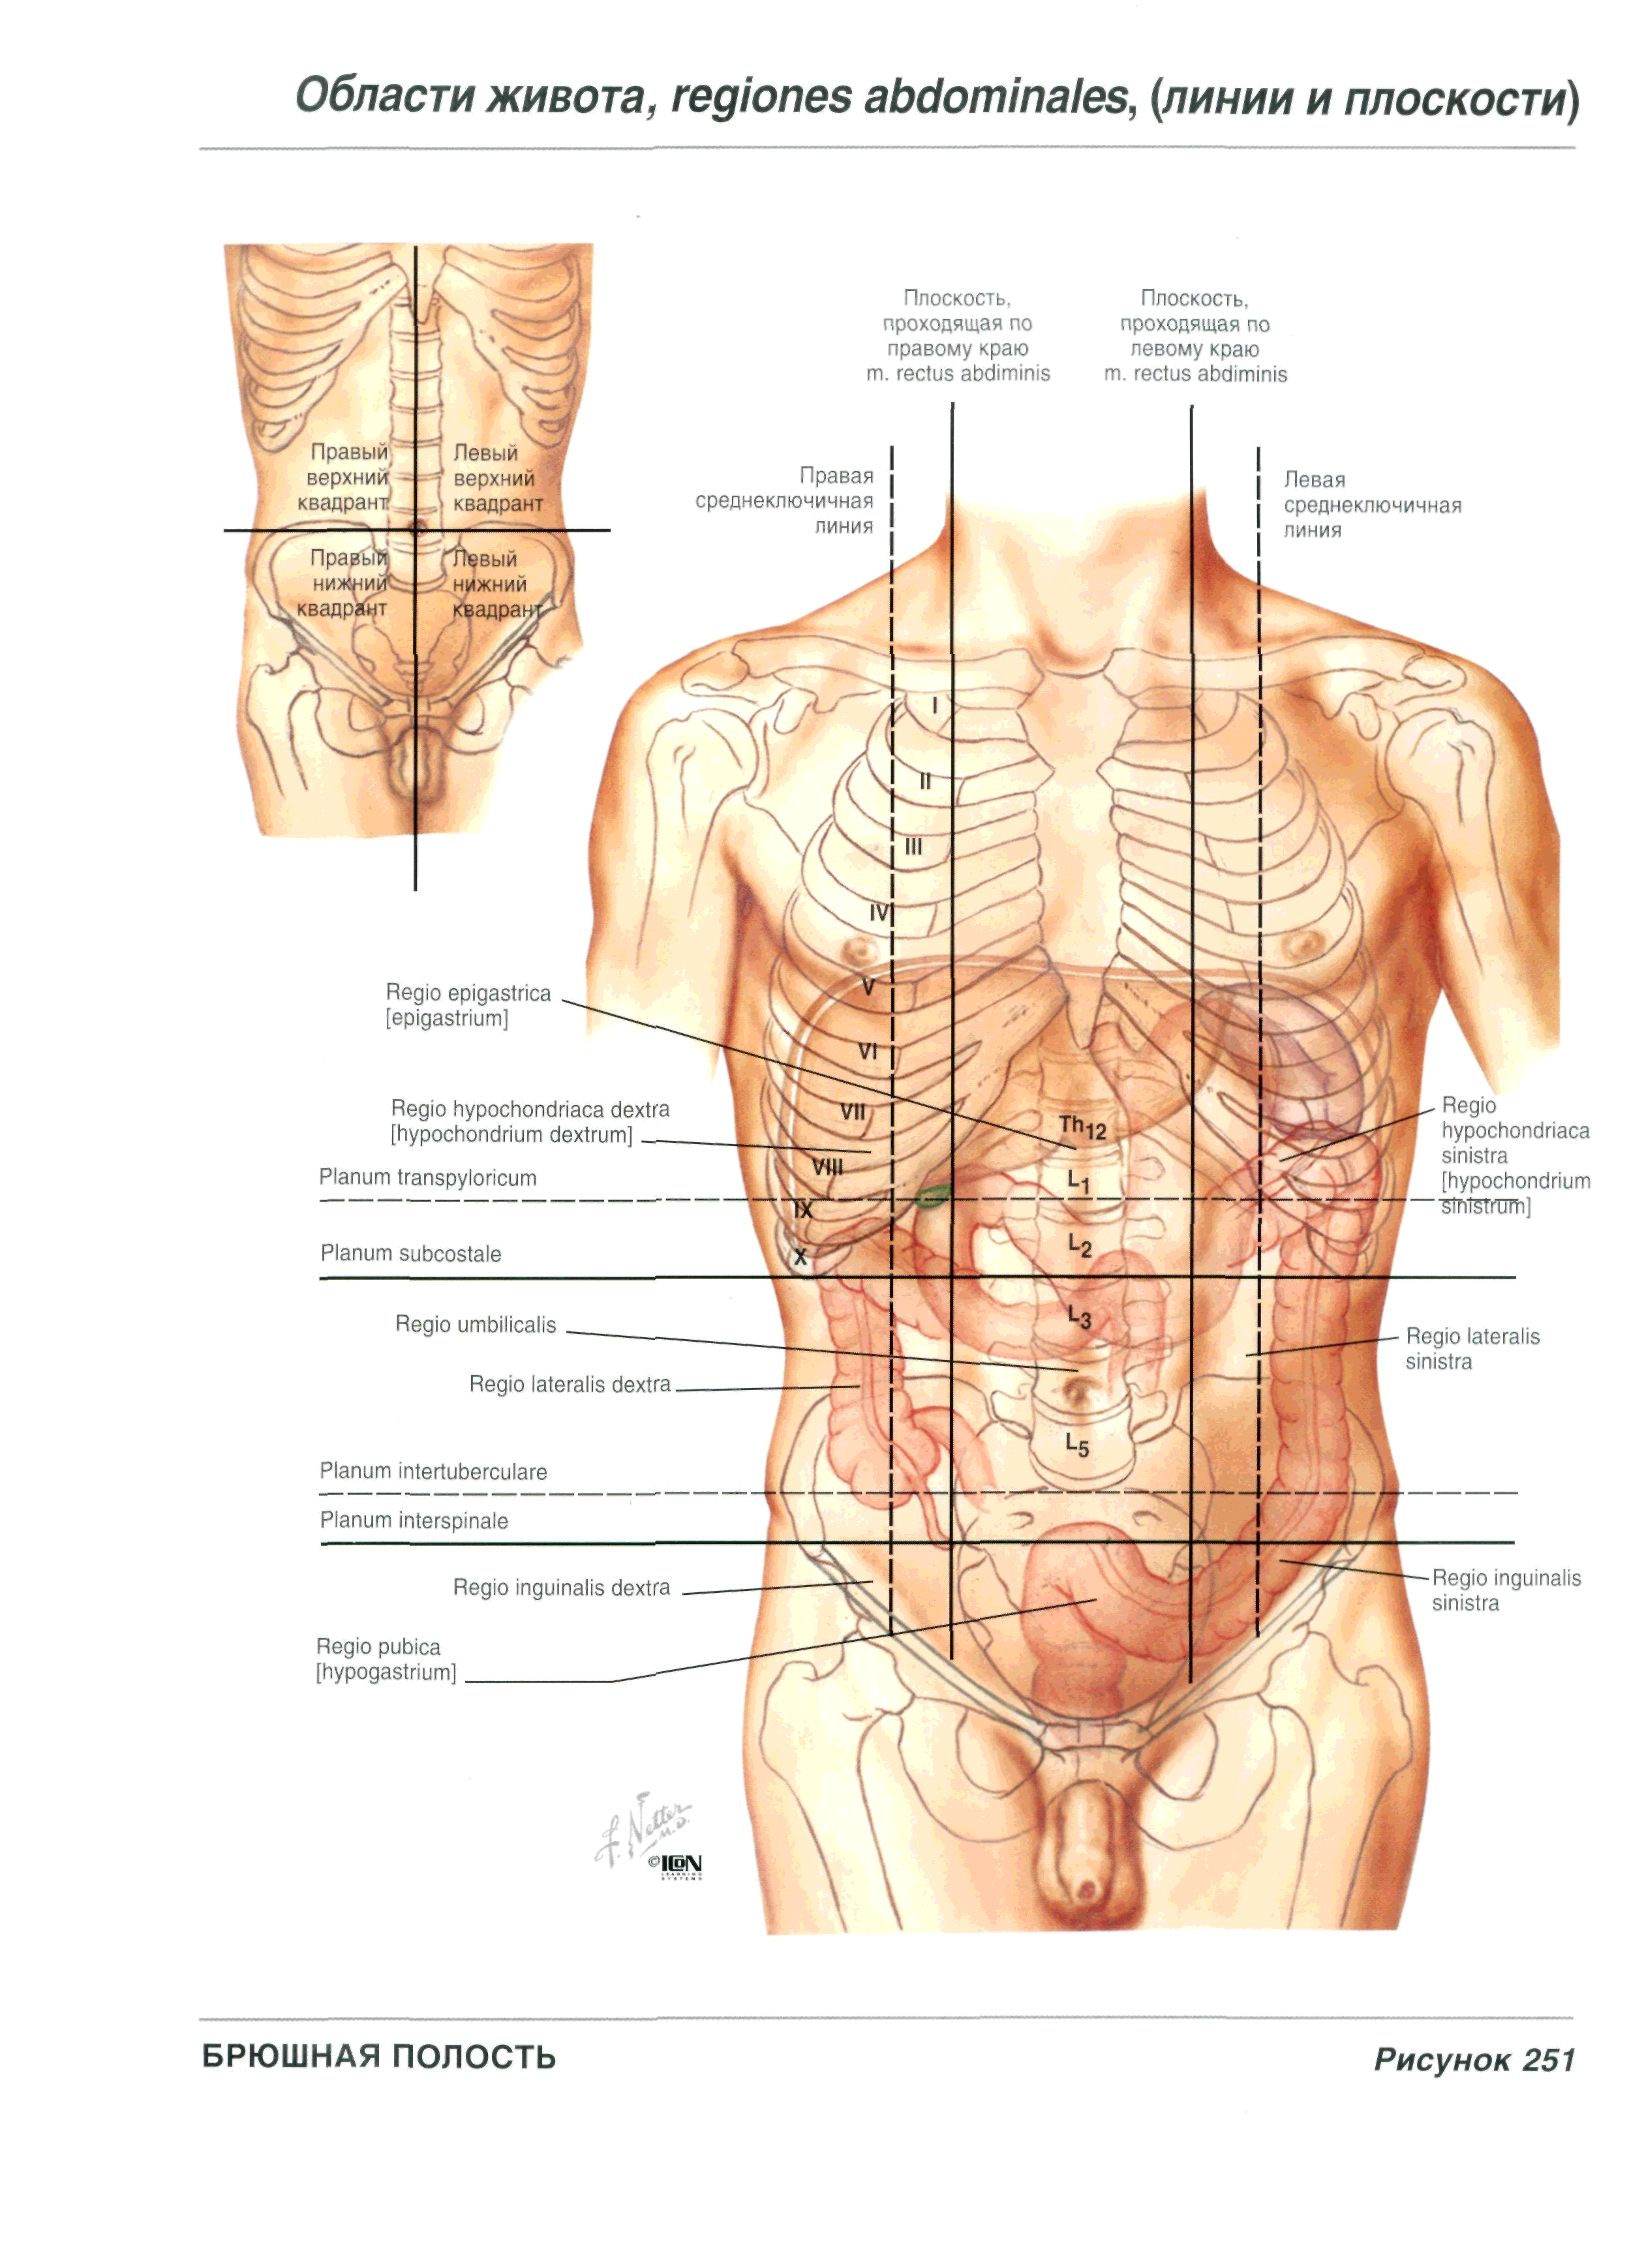 Что болит под левым подреберьем. Анатомия человека правый бок. Левое подреберье анатомия. Анатомия левый бок. Болит живот под левым ребром спереди что это.